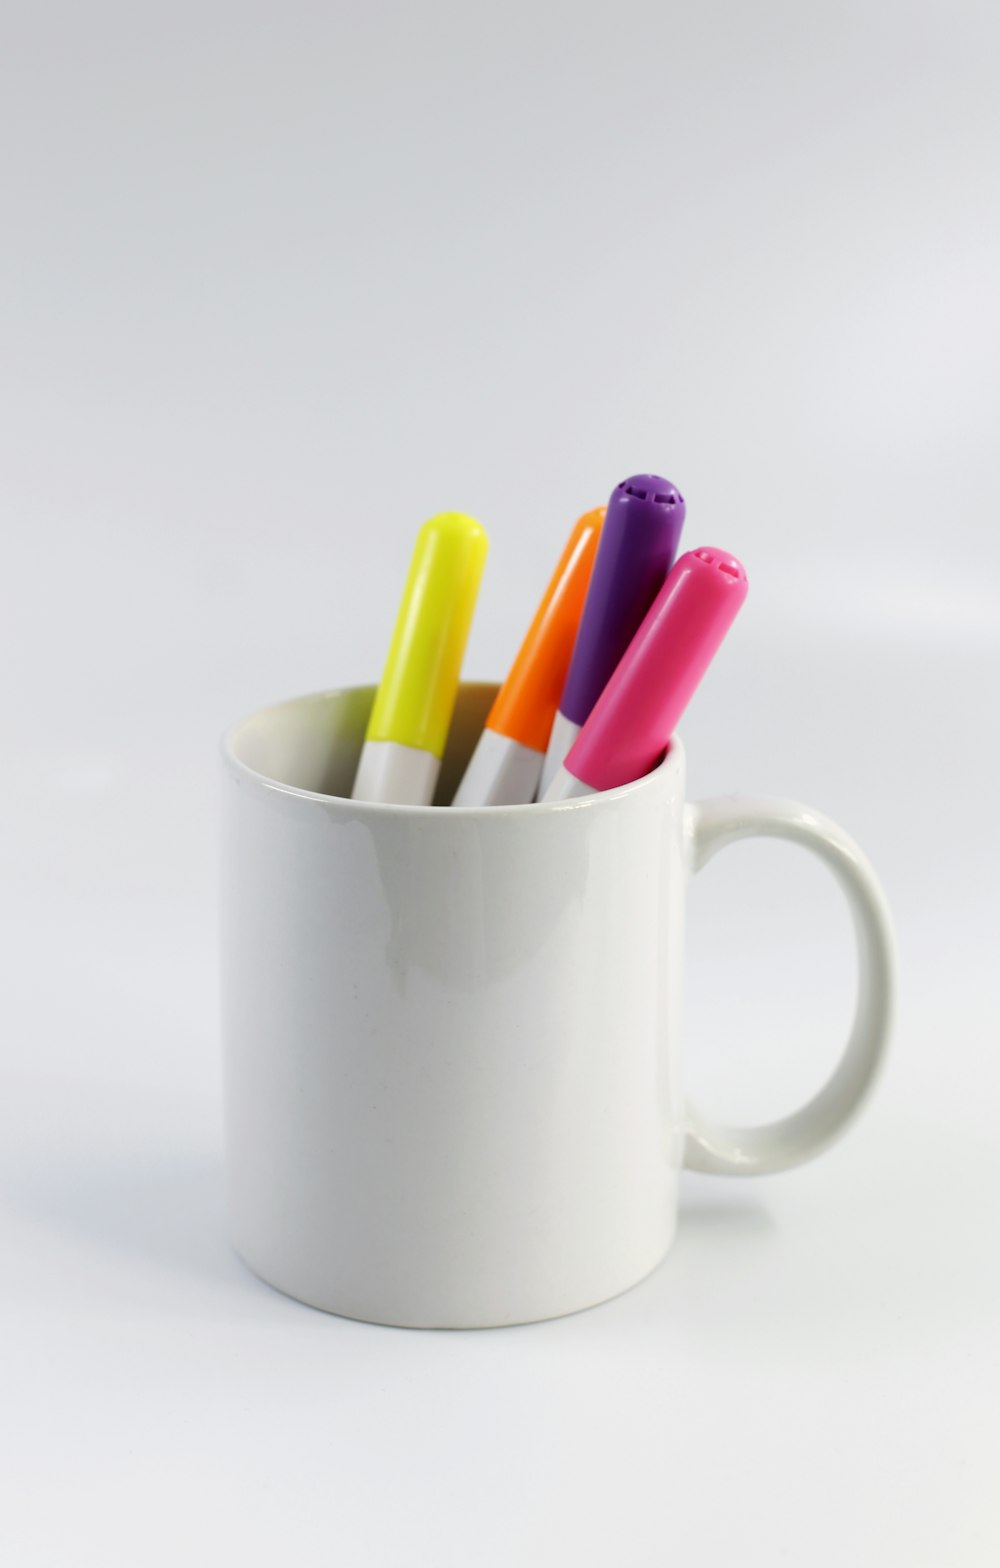 Taza de cerámica blanca con lápices de colores variados